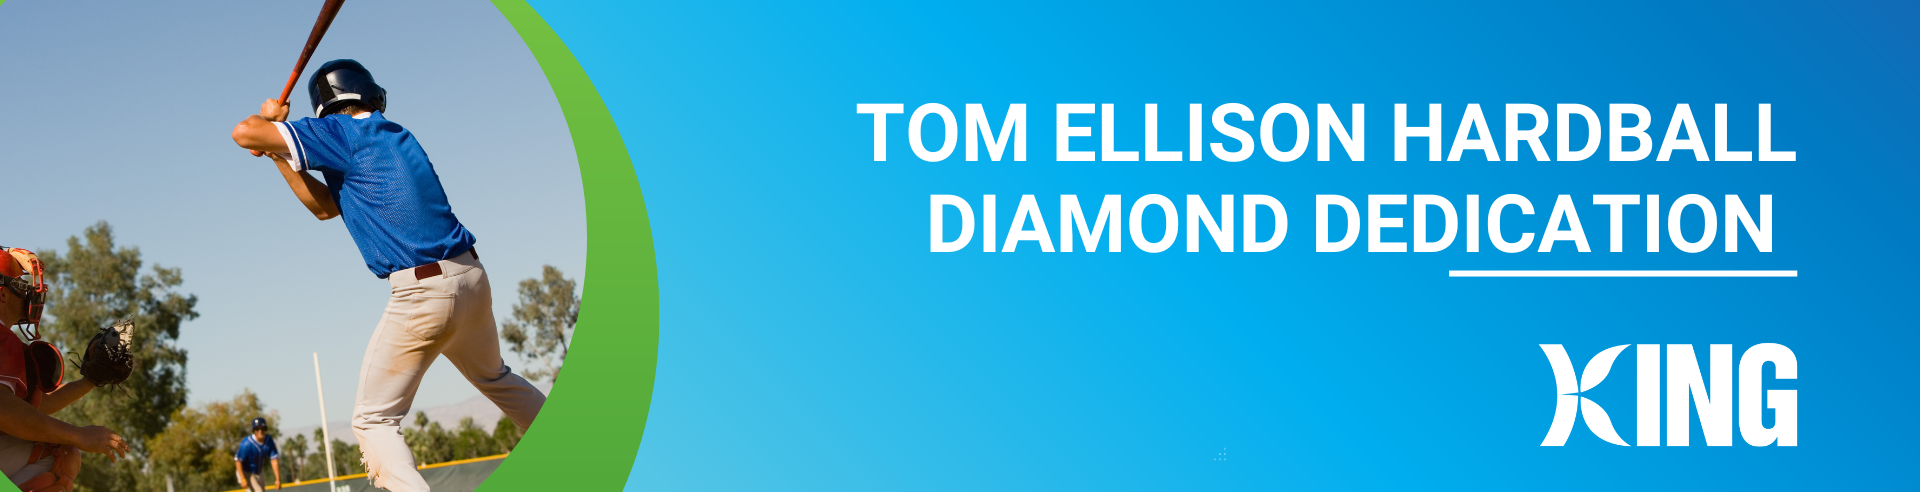 Tom Ellison Hardball Diamond Dedication